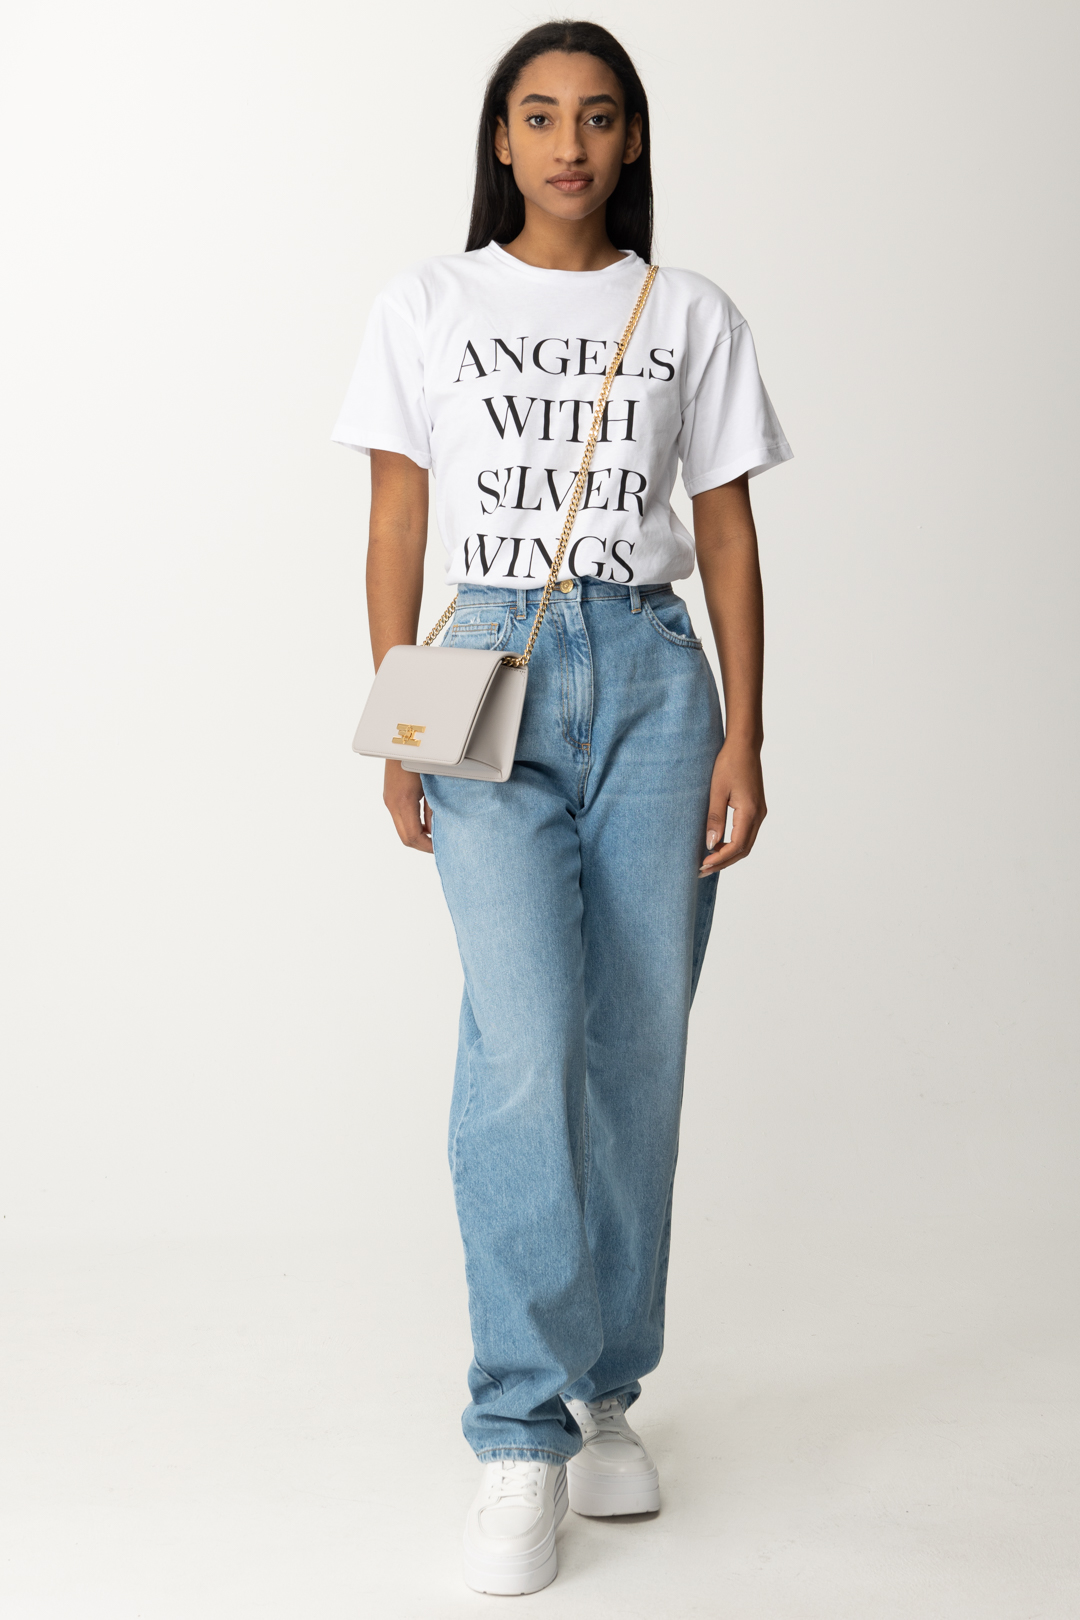 Vista previa: Elisabetta Franchi Camiseta con escritura estampada Gesso